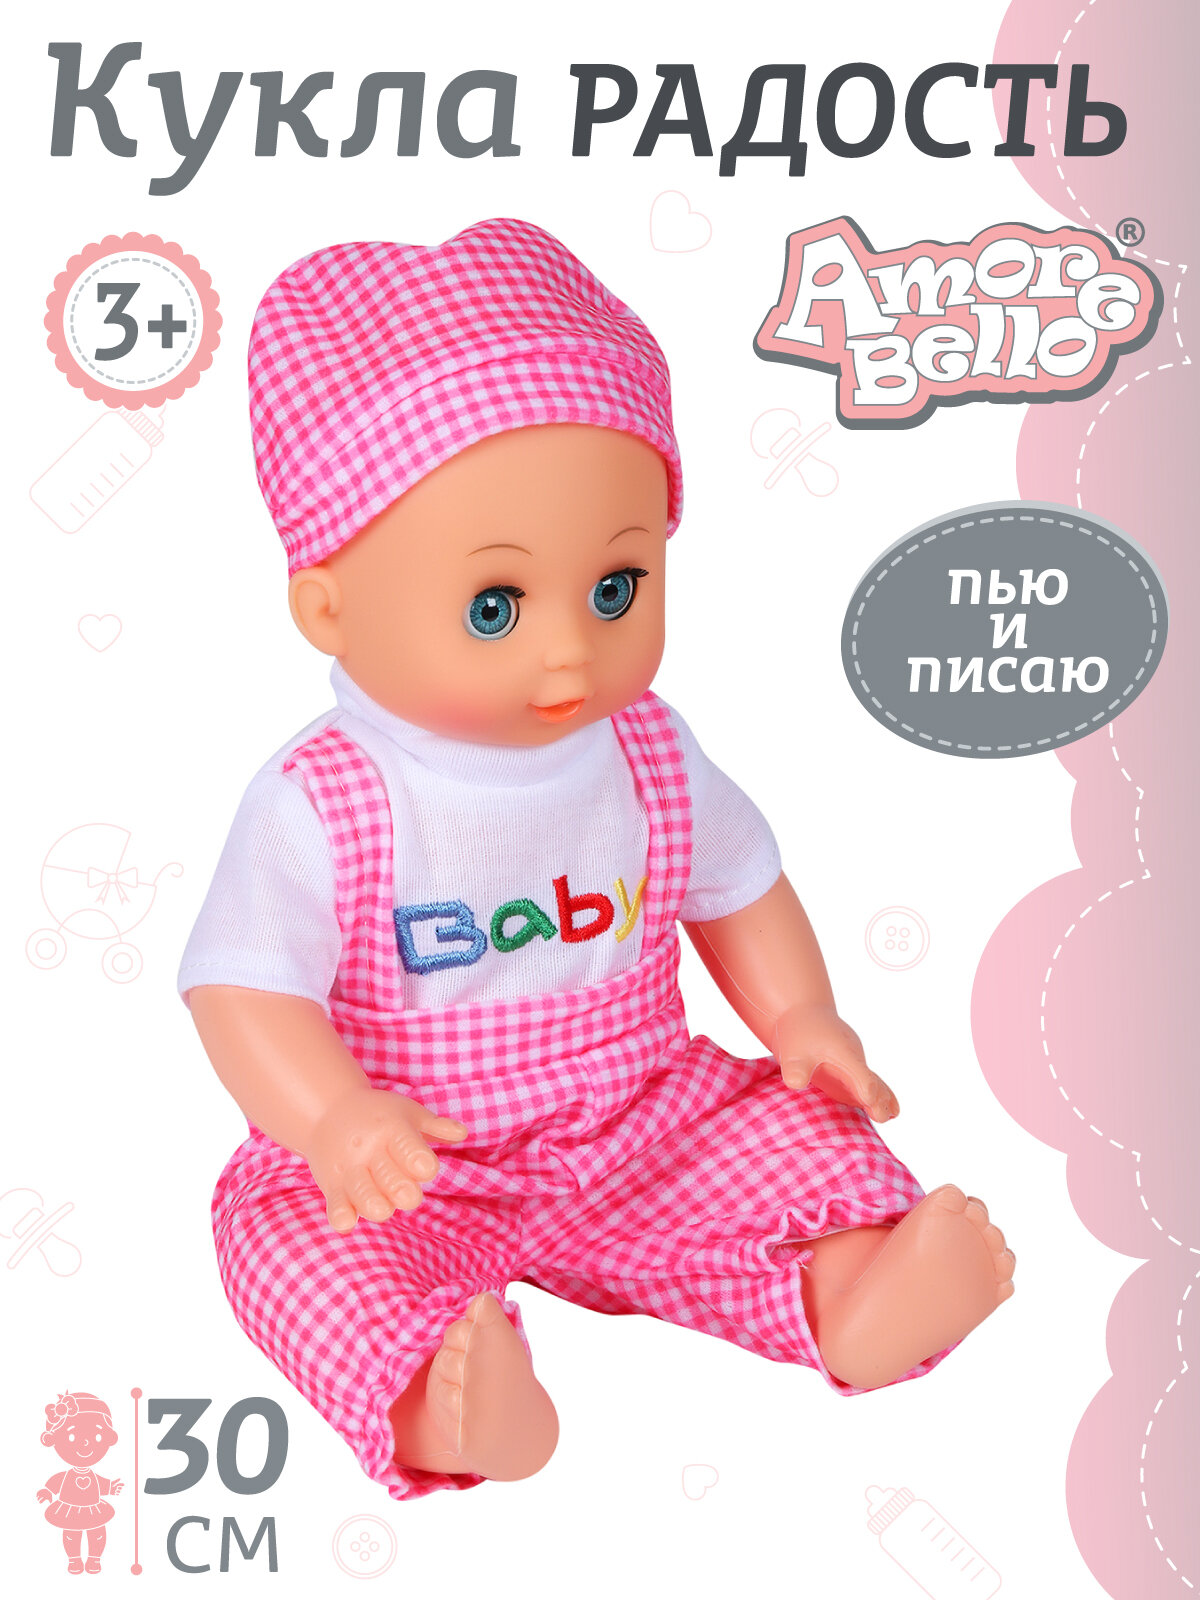 Кукла-Пупс 30 см серия Радость ТМ "Amore Bello" с аксессуарами, пьет и писает в горшок, для игры в дочки-матери, для детей, для девочек, бело-розовый